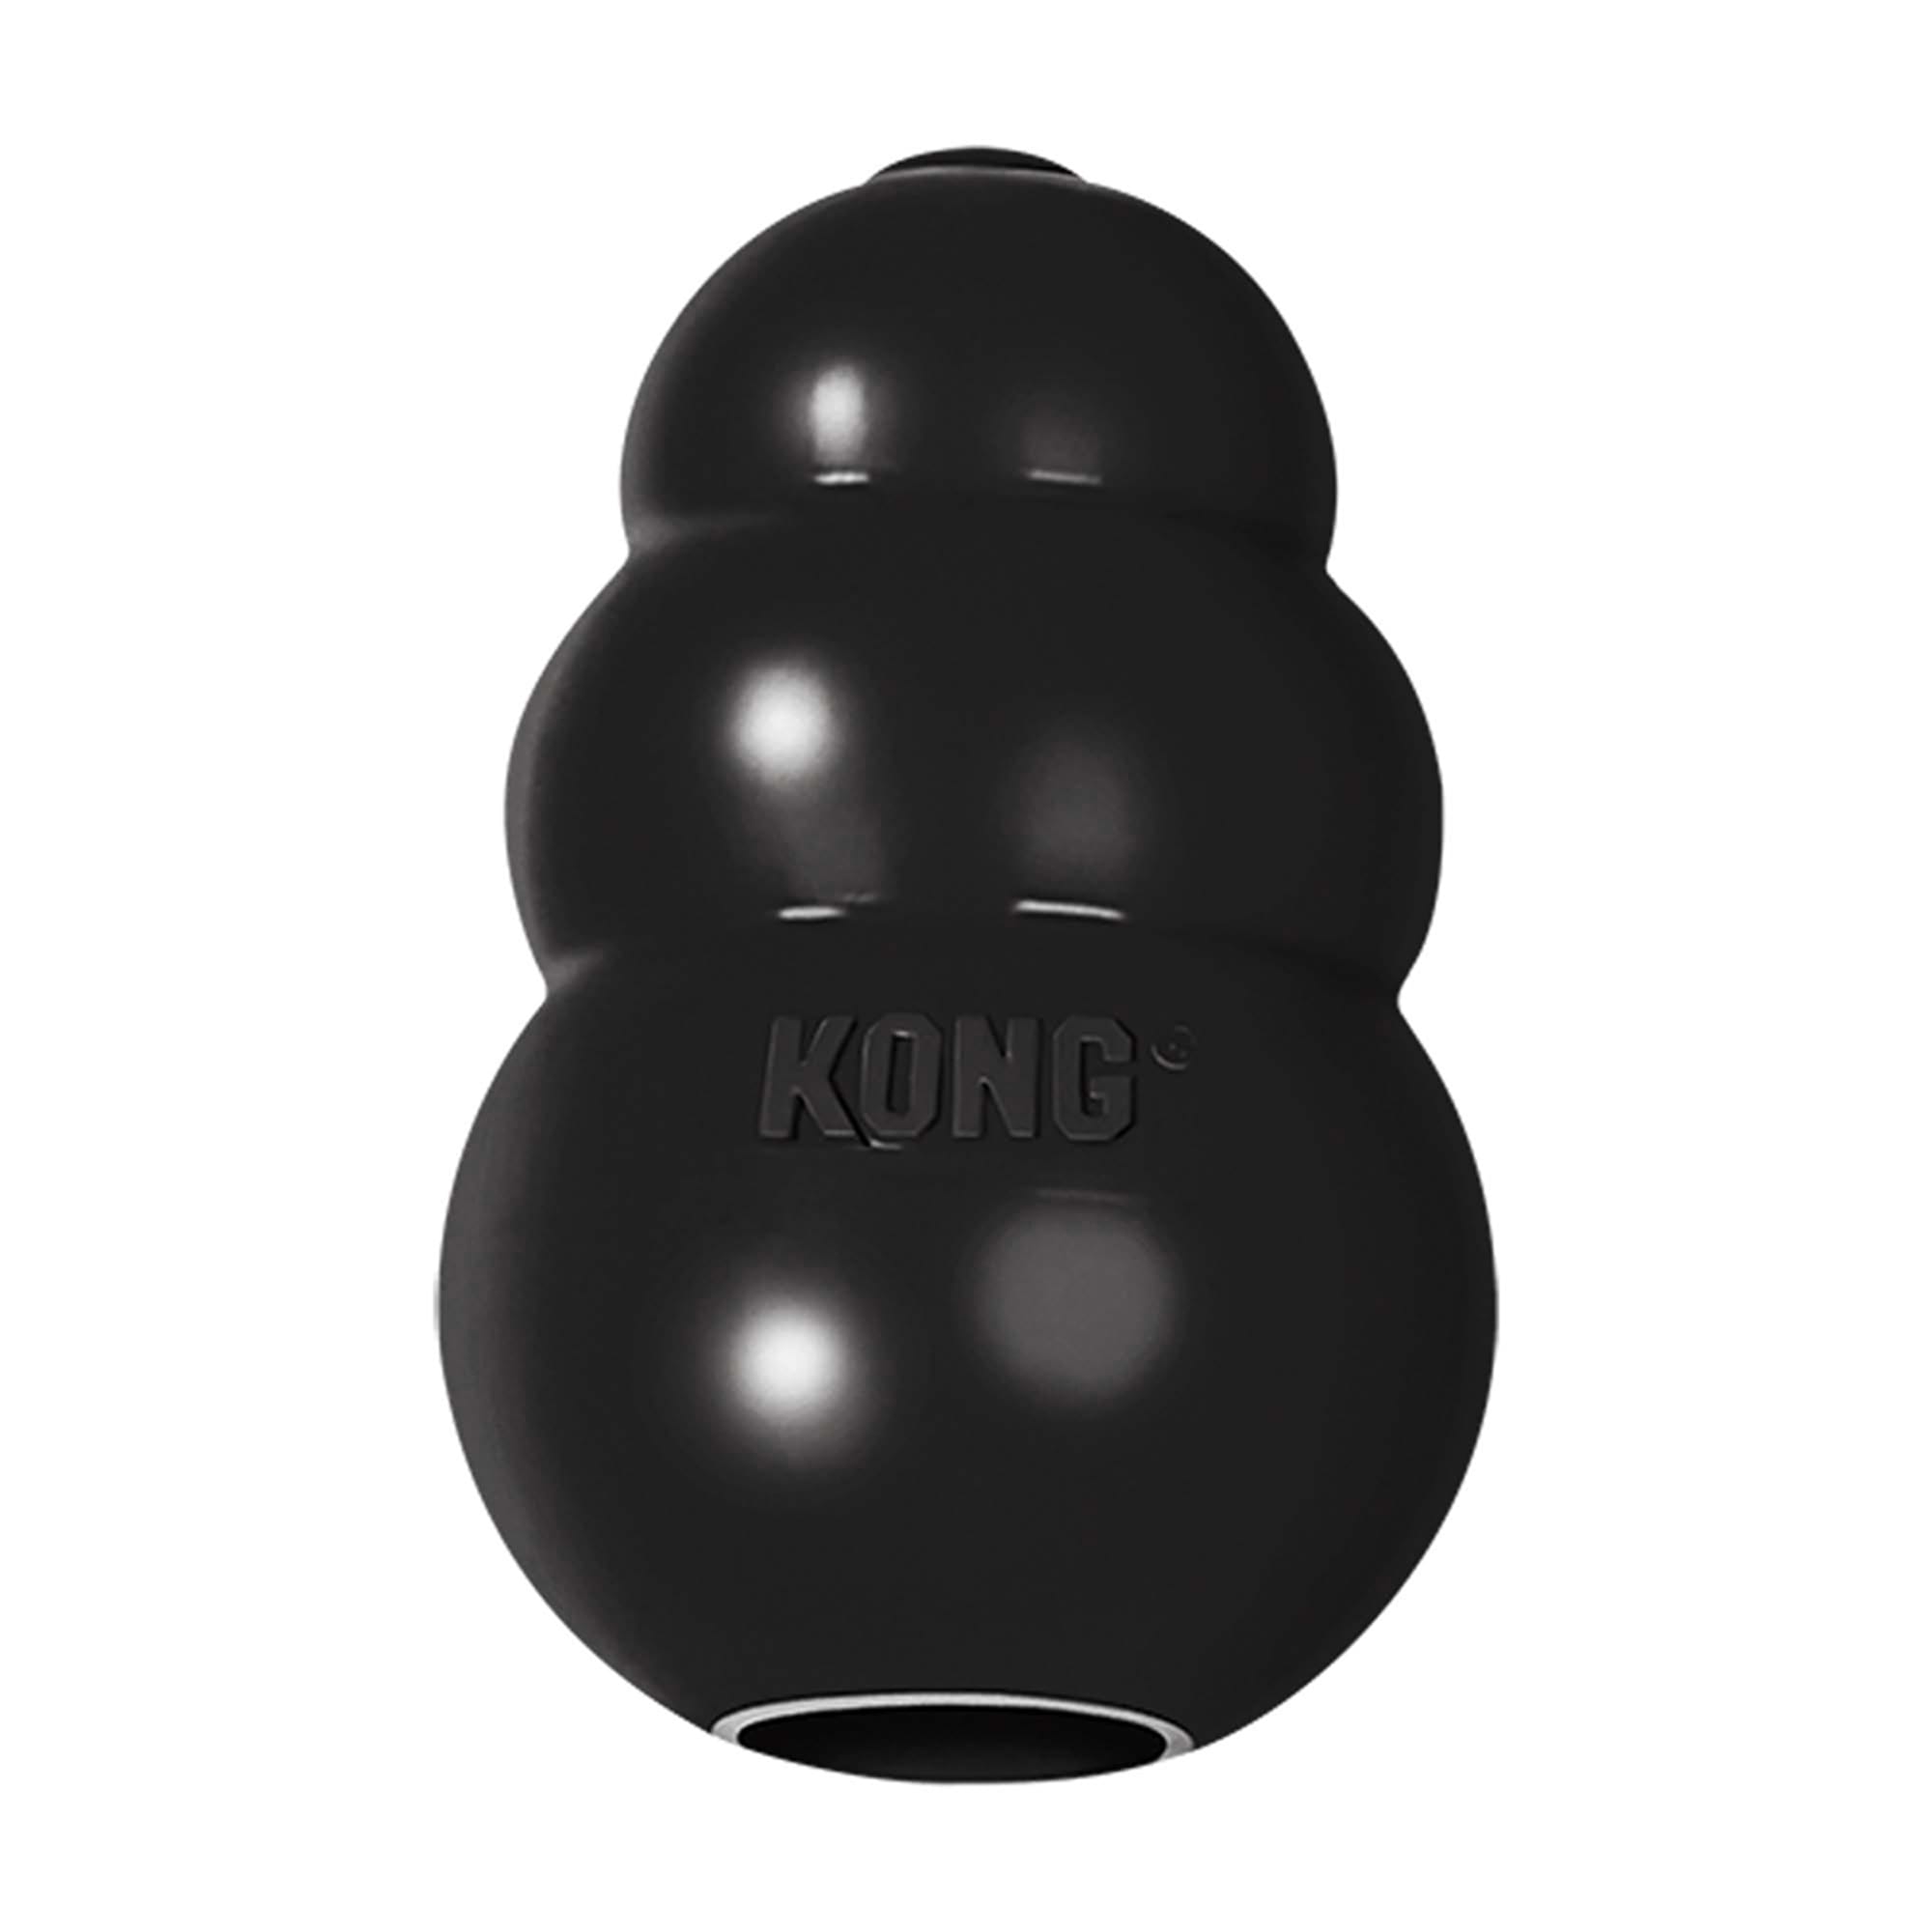 KONG Extreme Dog Toy, Large, Black